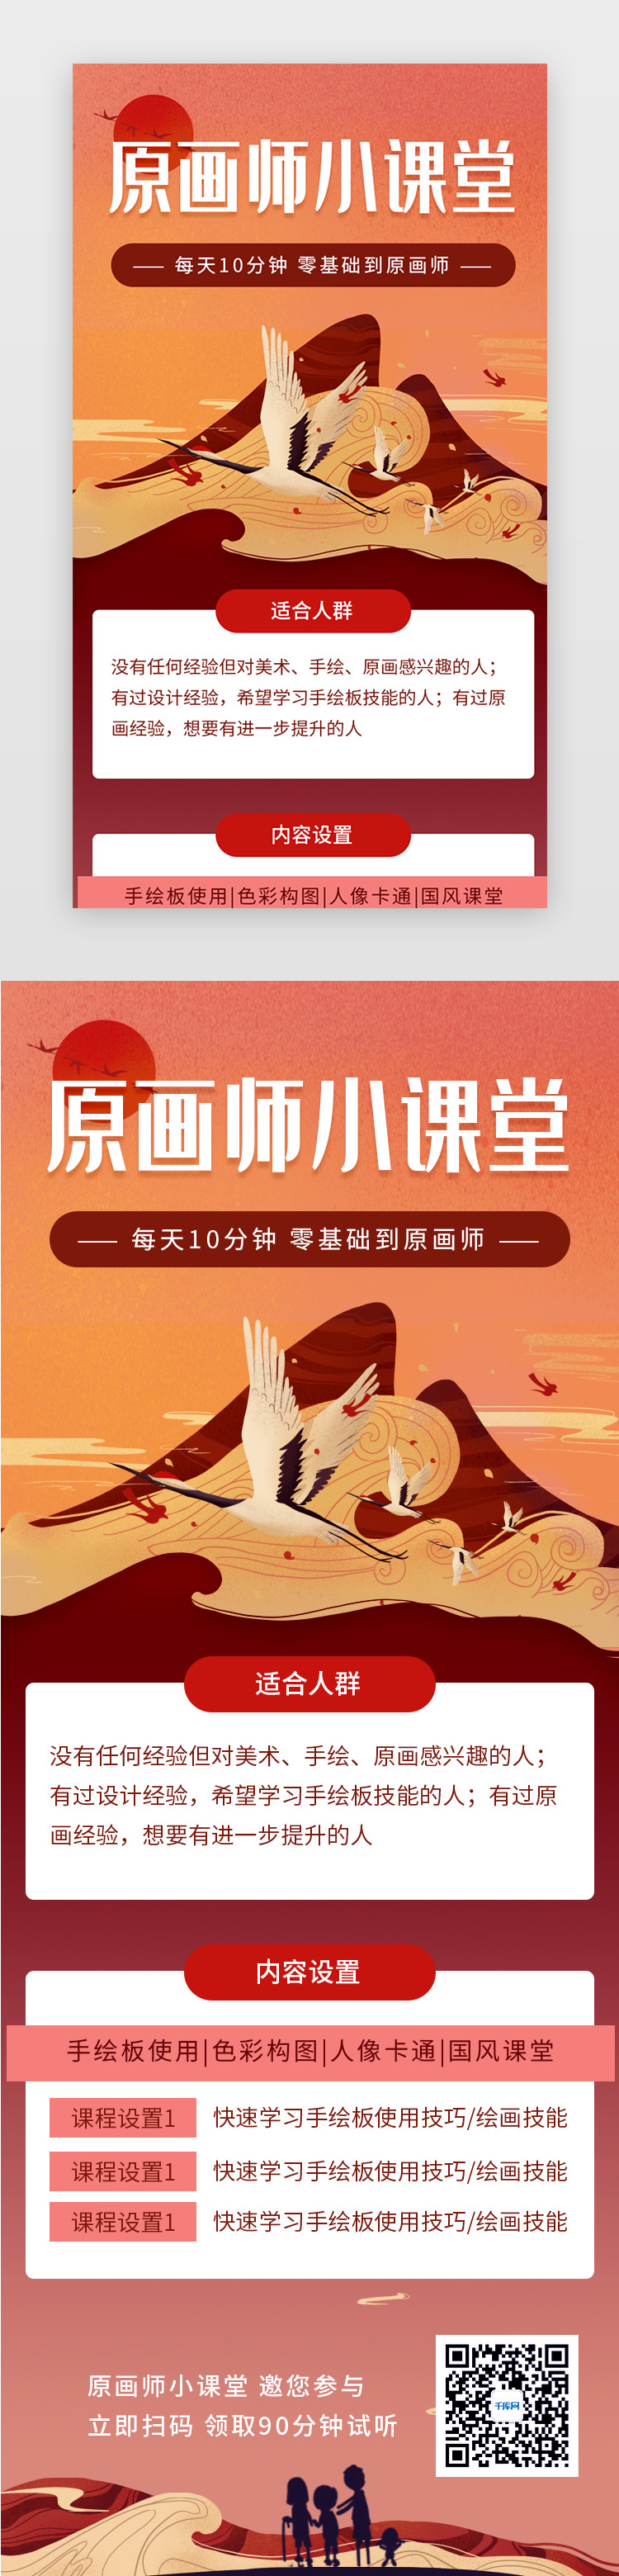 红色暖色中国风原画手绘技能教育培训h5长图图片